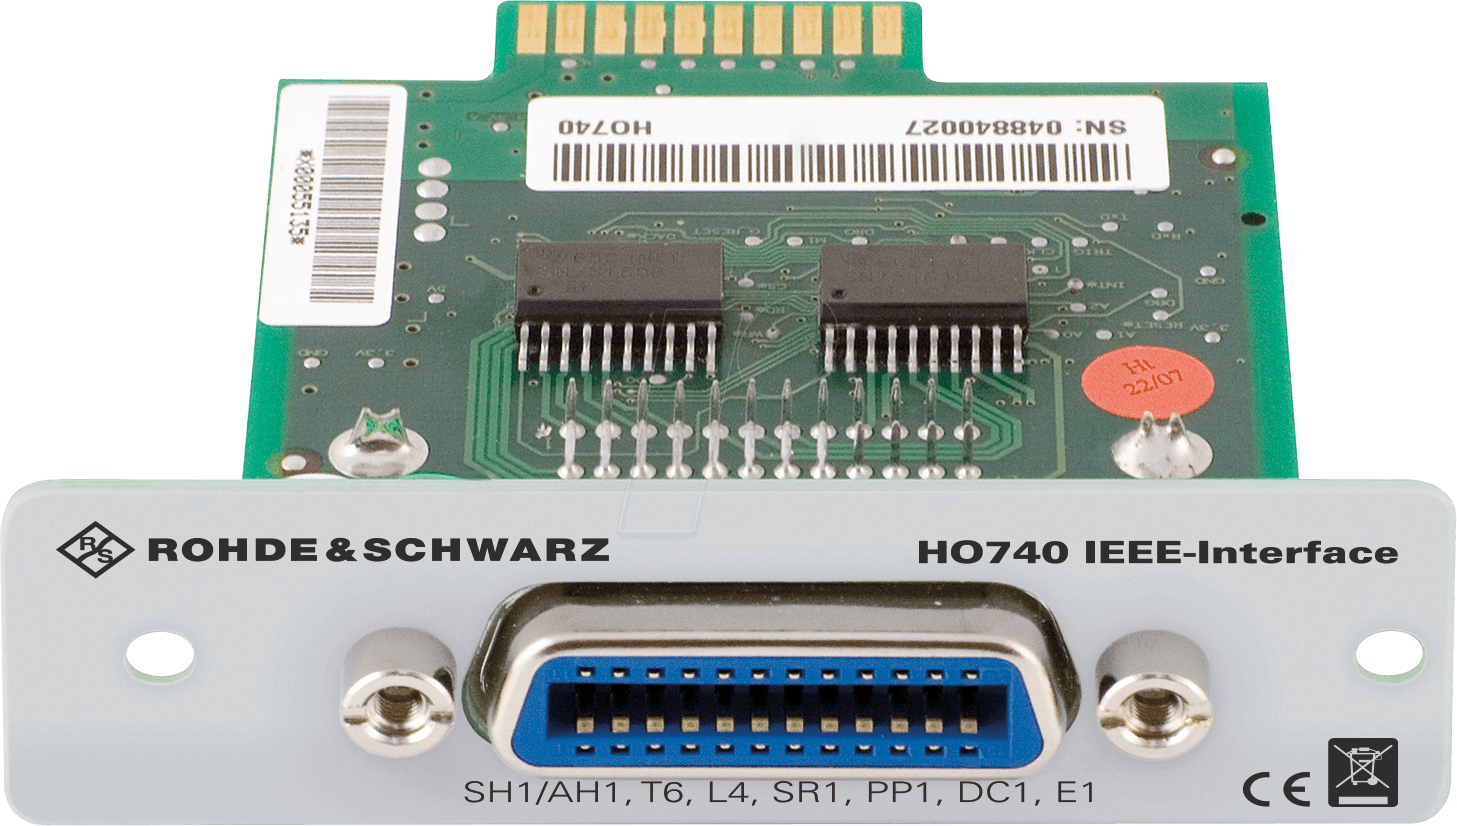 HO 740 - Erweiterung für HMP, HMF, HMS und HMO, GPIB / IEEE488 von ROHDE & SCHWARZ